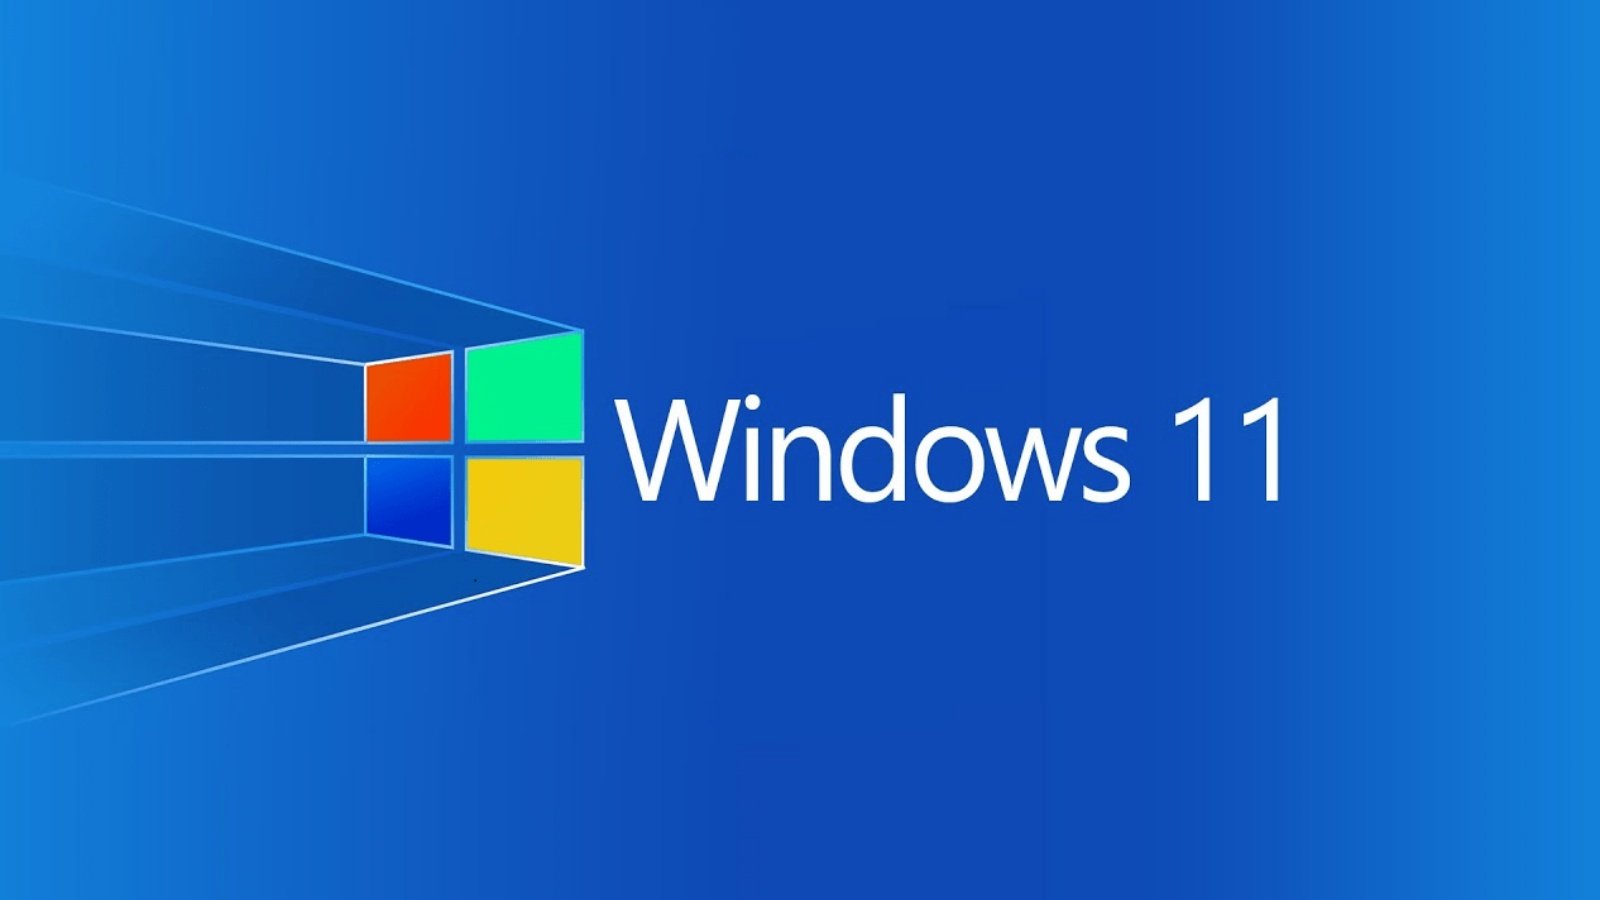 Mise à jour Windows 11 CHANGEMENTS Officiels Microsoft Des millions d'utilisateurs